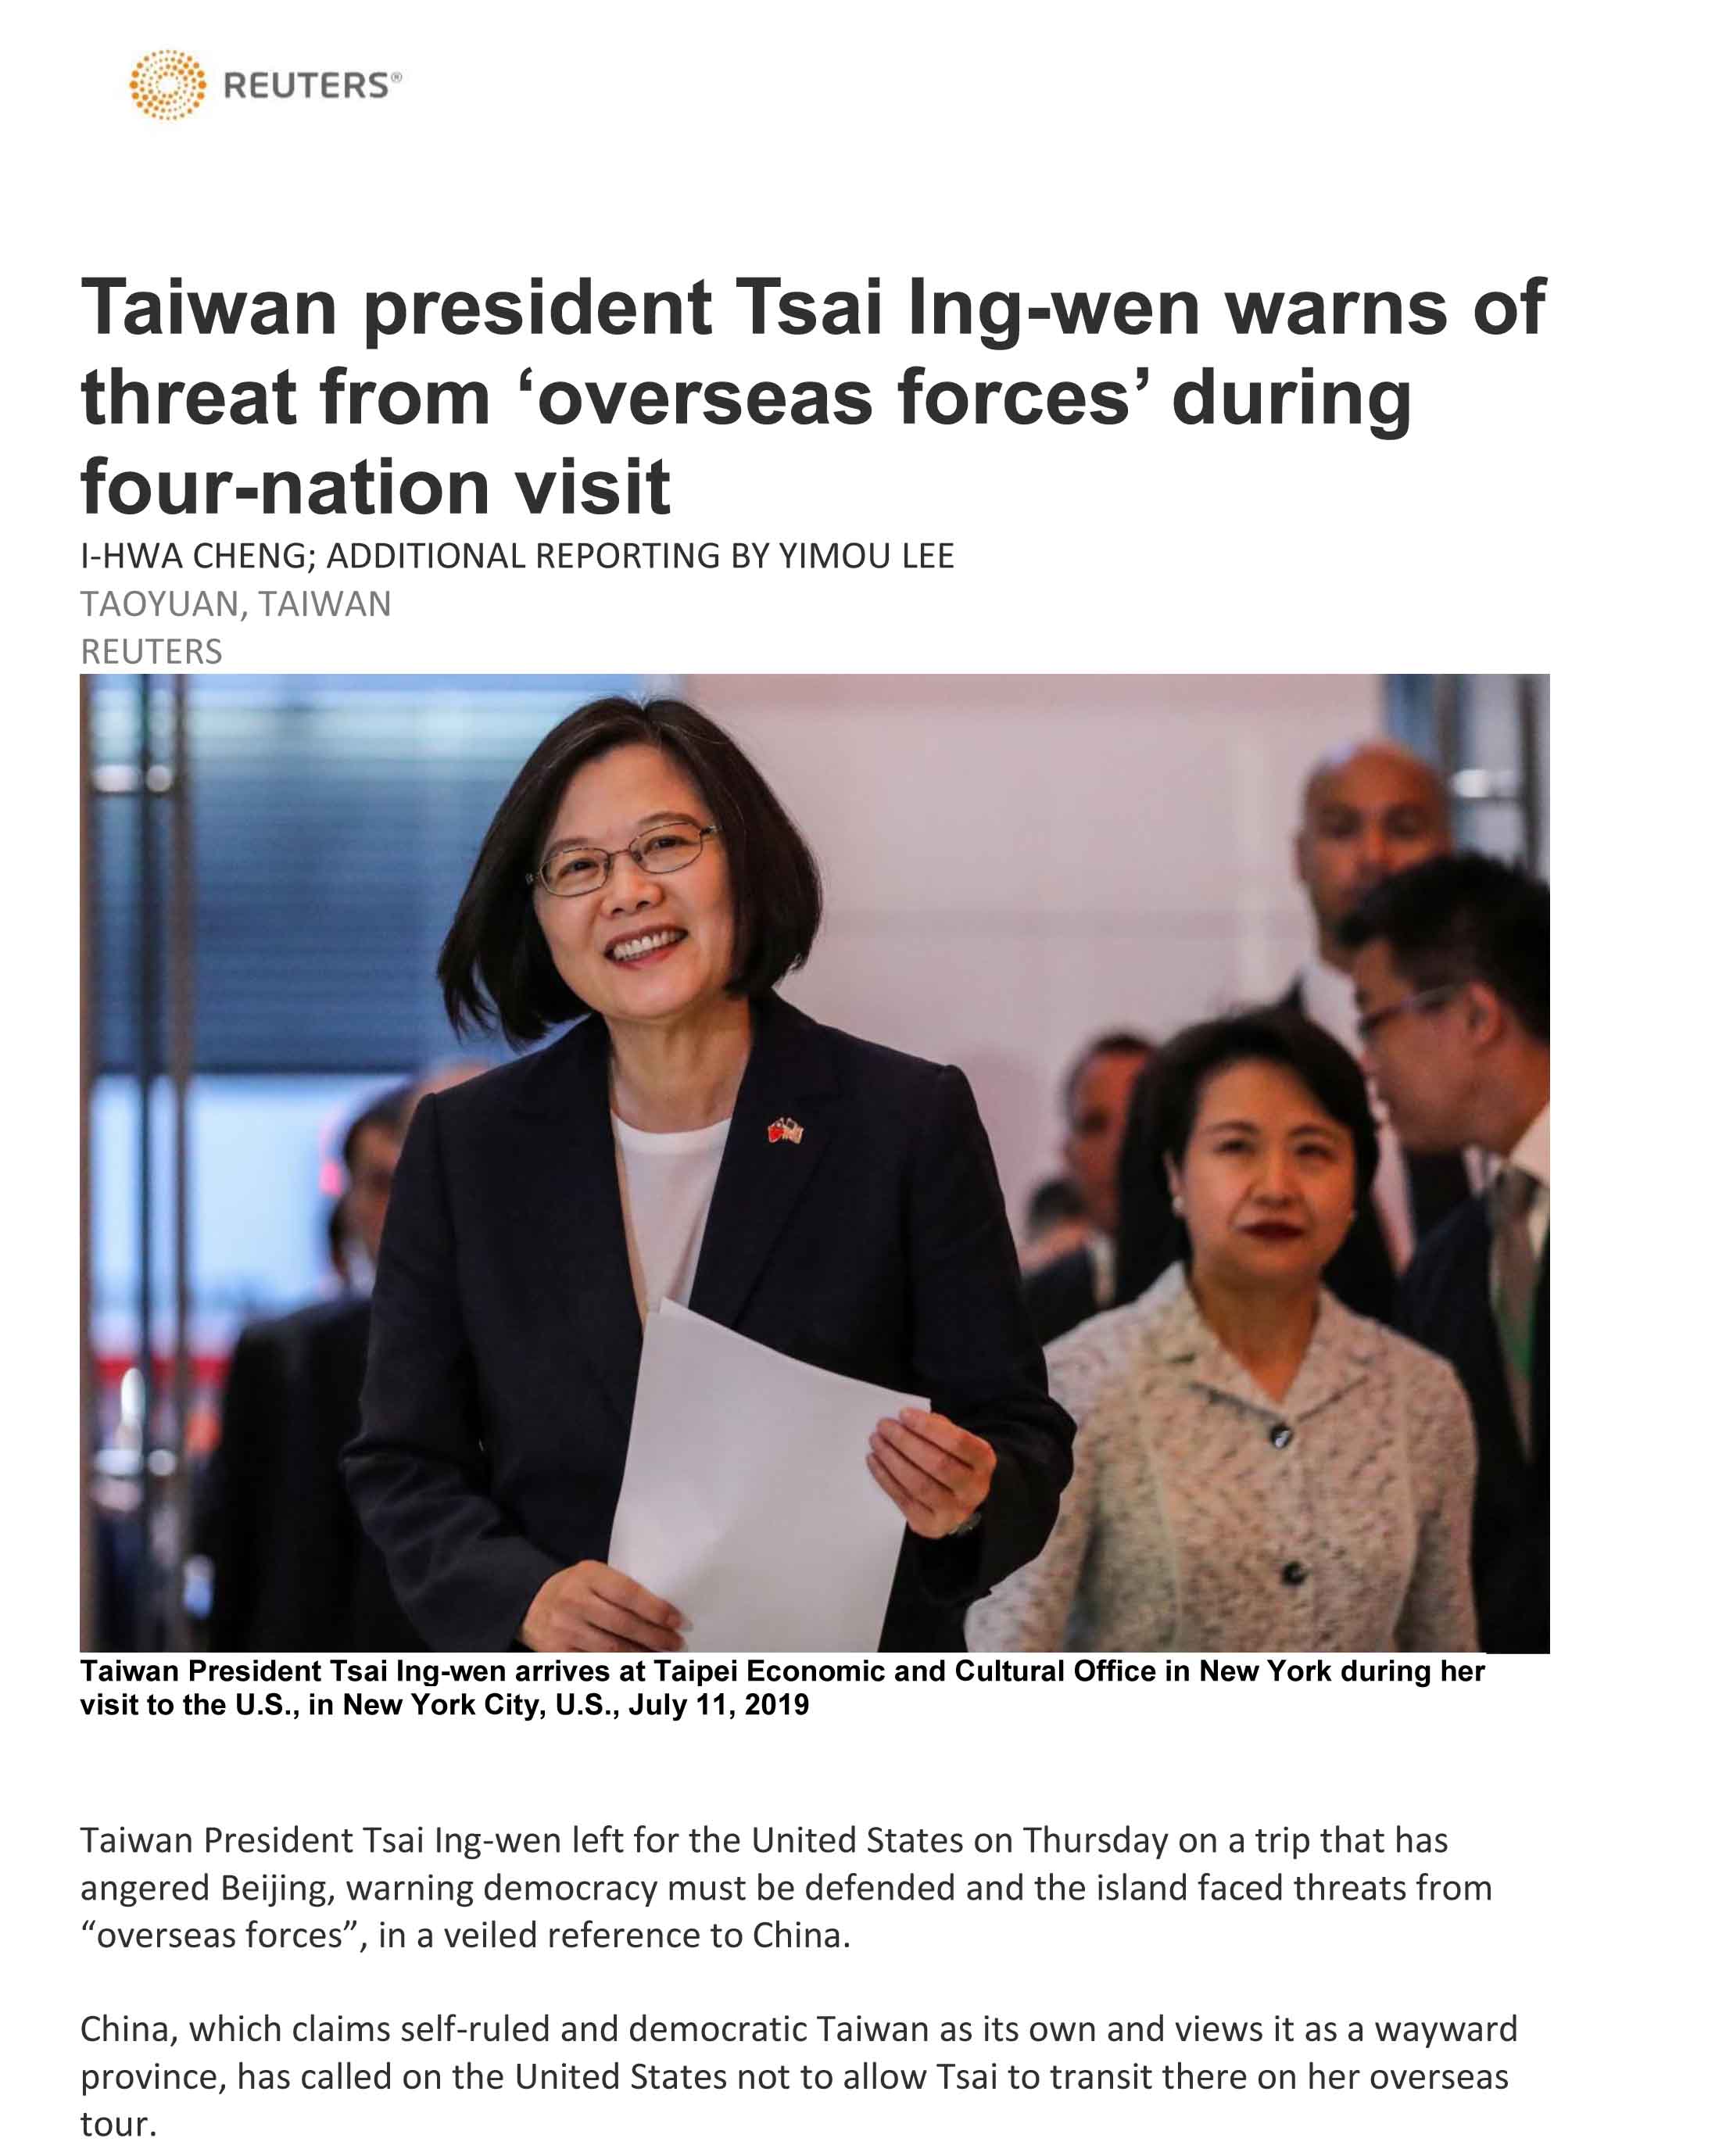 臺灣總統蔡英文啟程訪問四友邦，行前宣稱台灣面臨「境外勢力」威脅